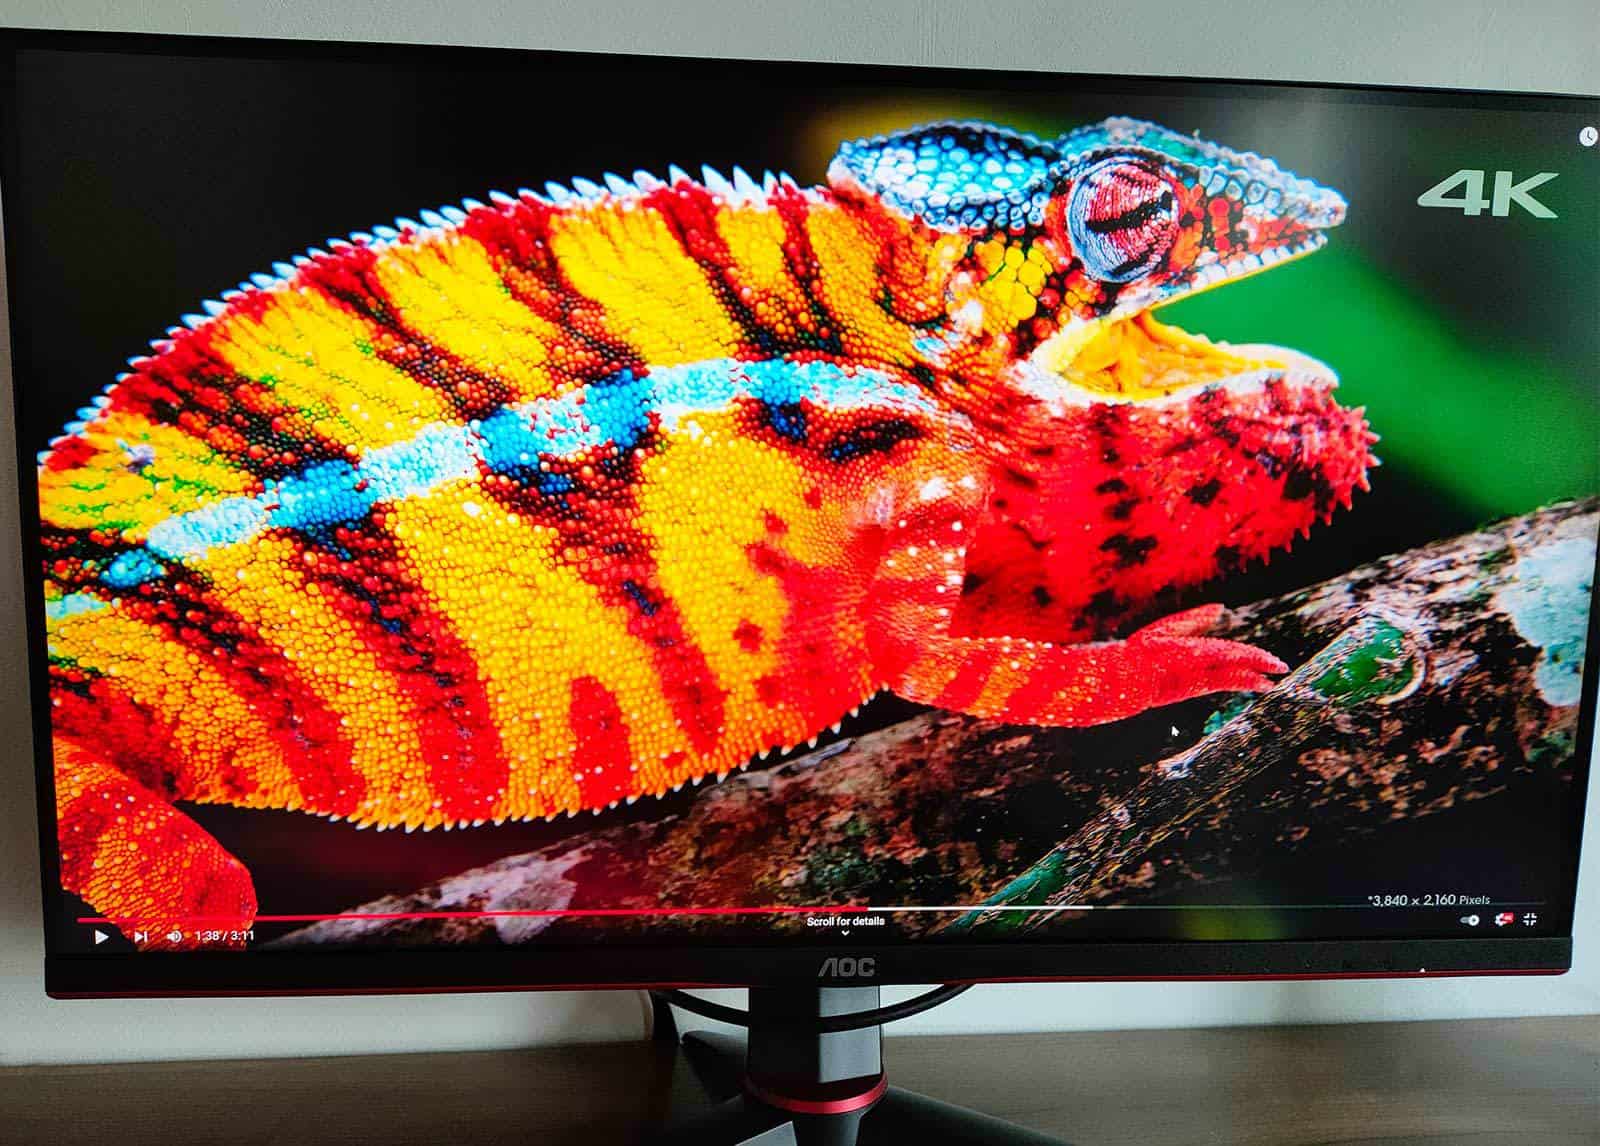 Du 144 Hz pour 180 euros avec cet écran PC 24 pouces de chez Acer